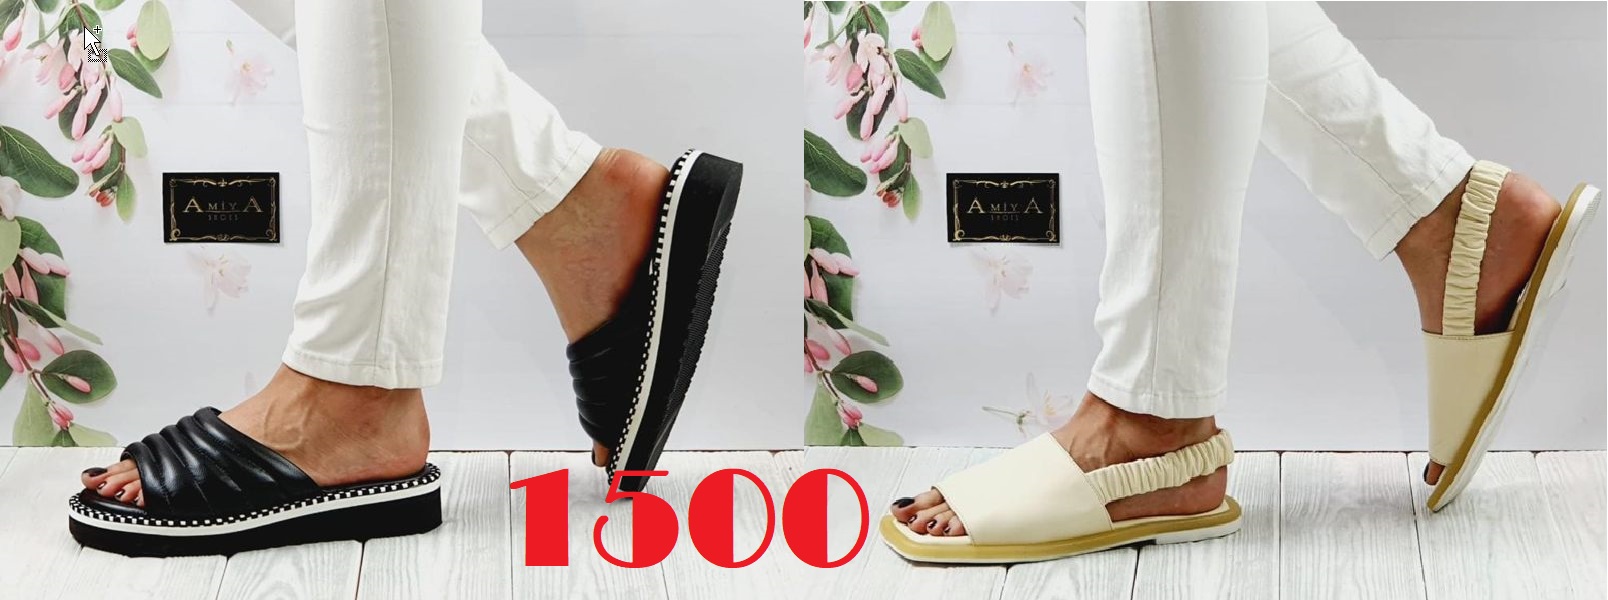 Новые модели обуви Турецкого бренда Ami**ya в сборе 1-22! Приглашаю;)